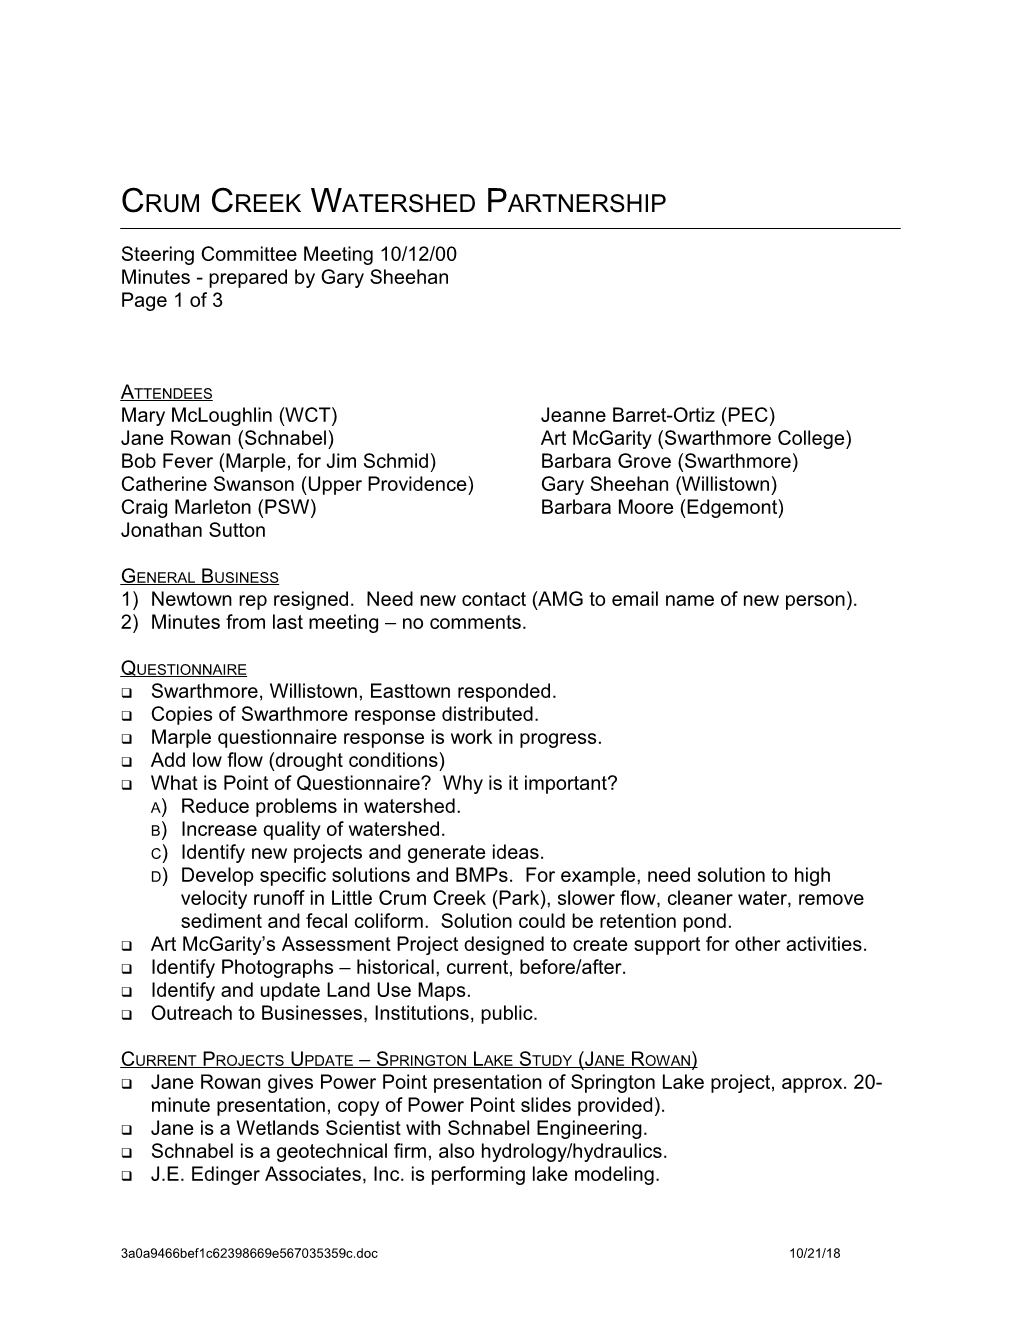 Crum Creek Watershed Partnership